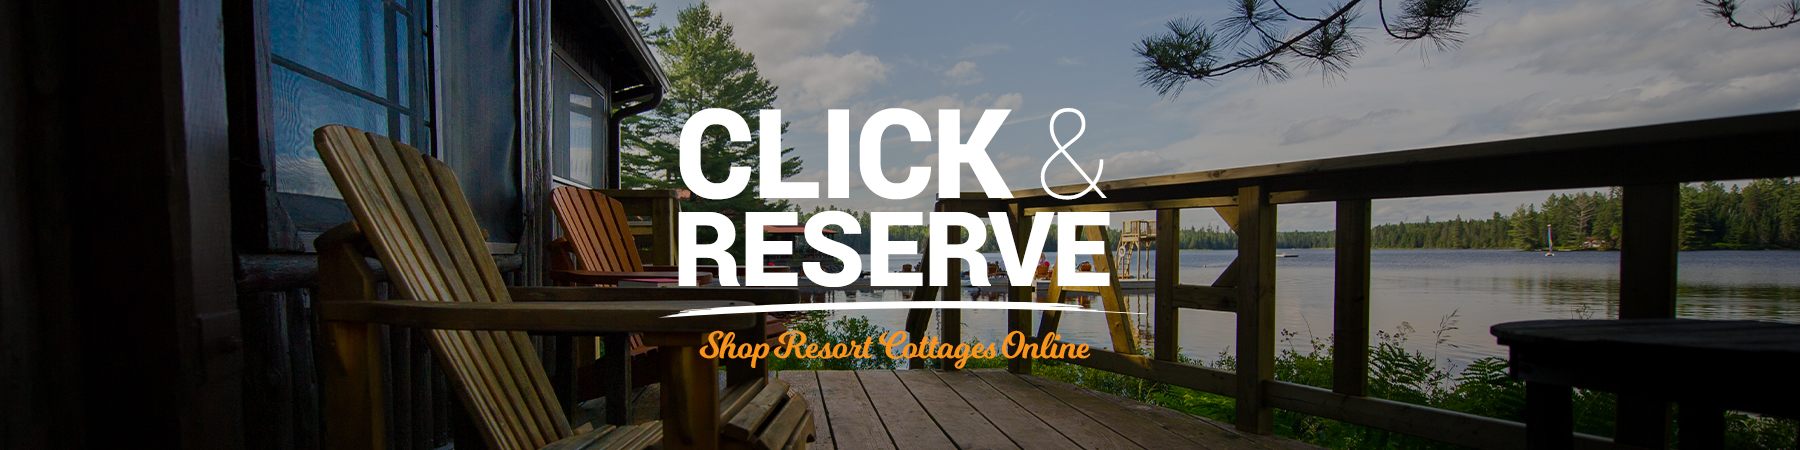 Click & Reserve